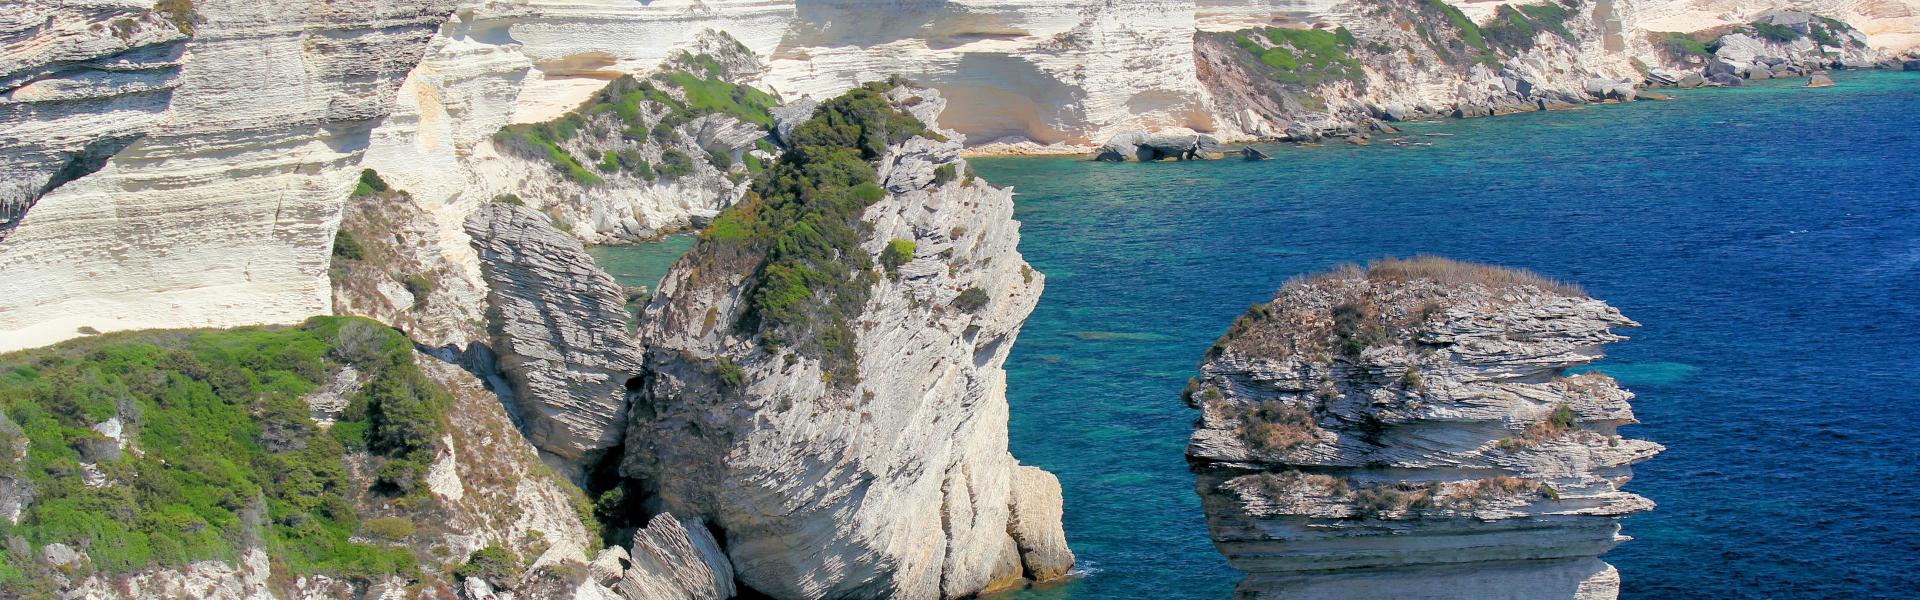 Location de vacances à Lecci - Corse-du-Sud - Amivac